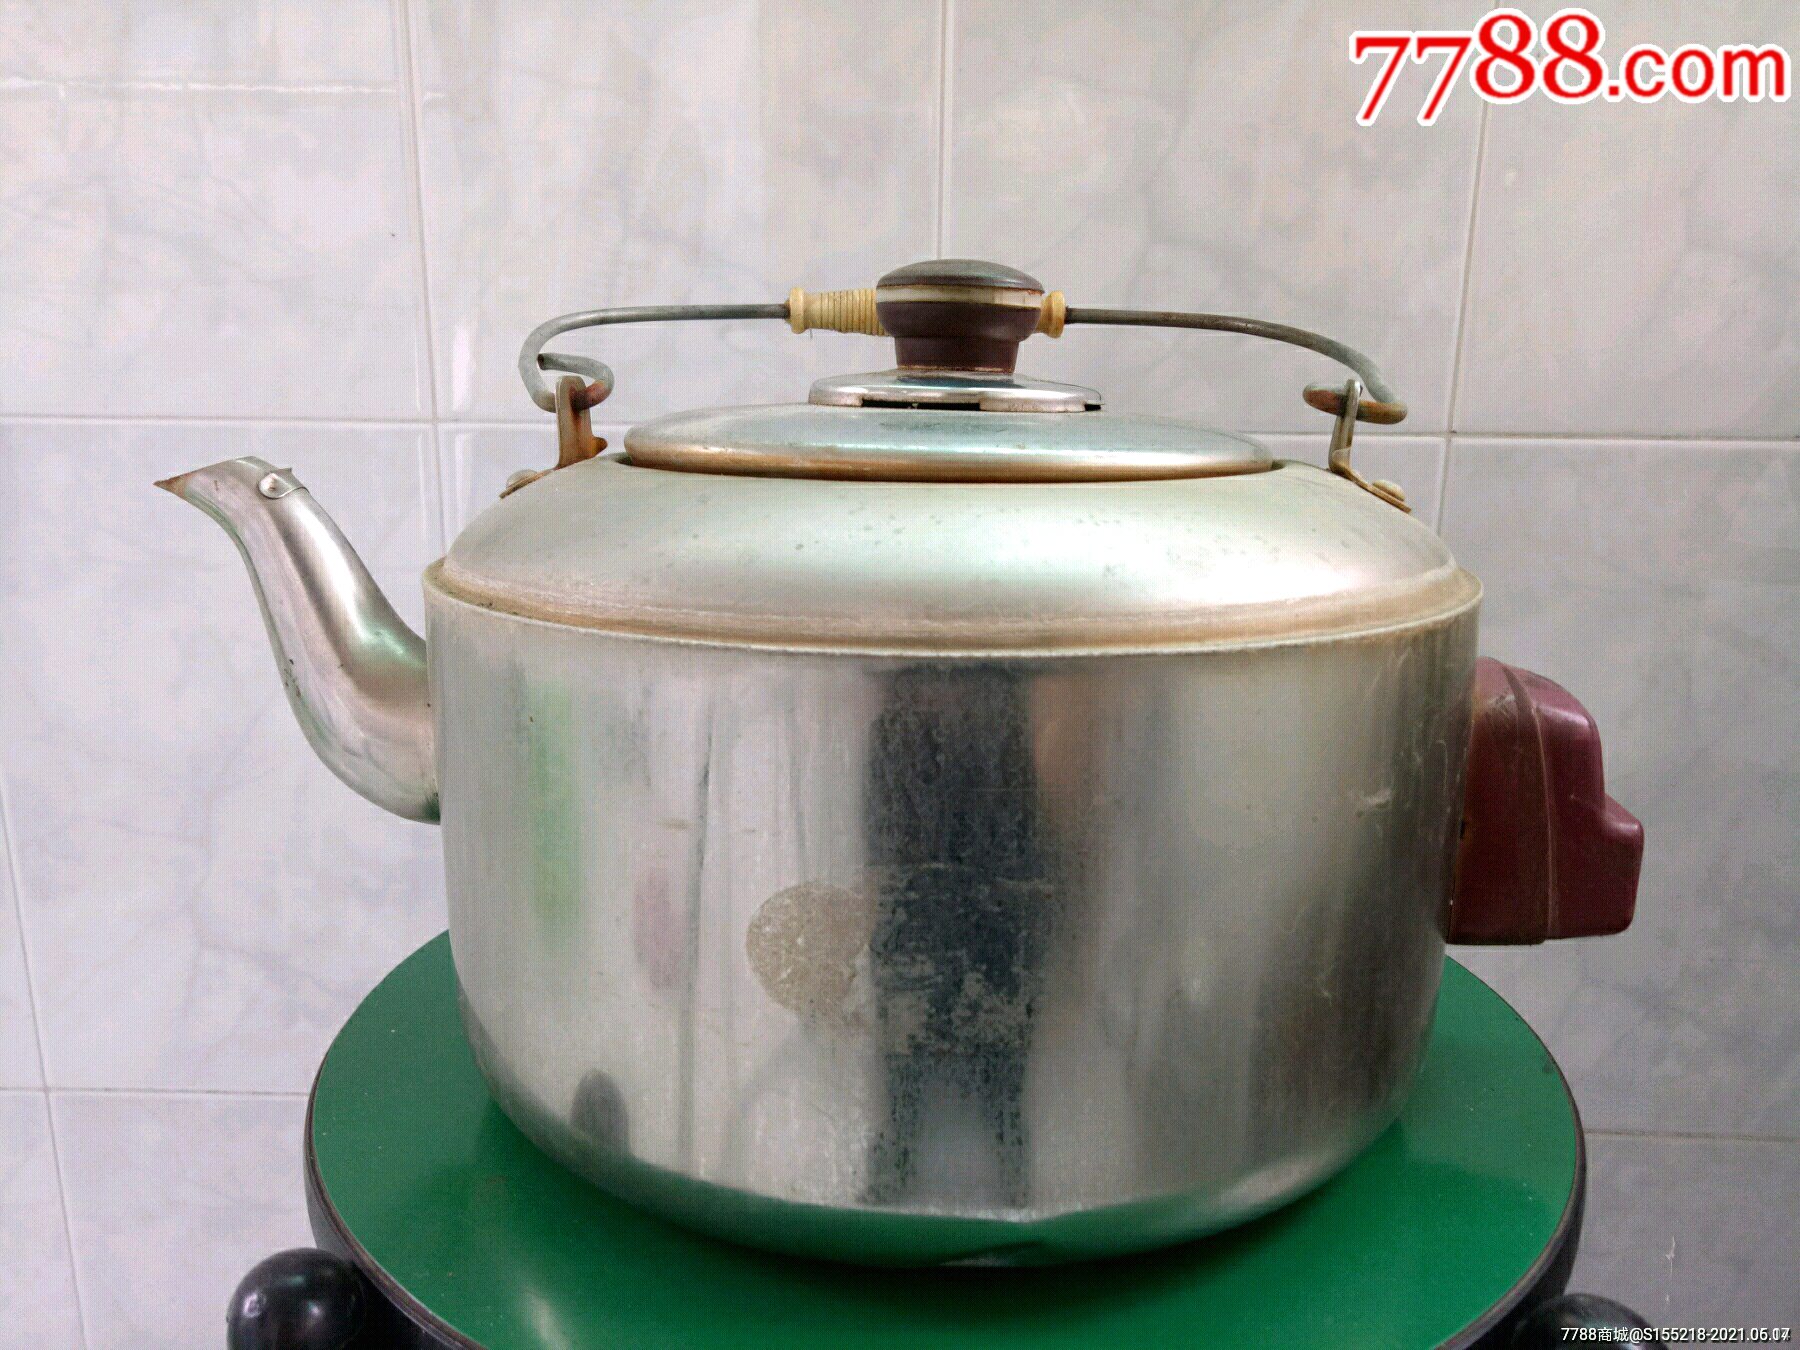 老式铝合金电水壶一件(厚重坚固,老铝壶优点是烧水无一丝怪味,正常